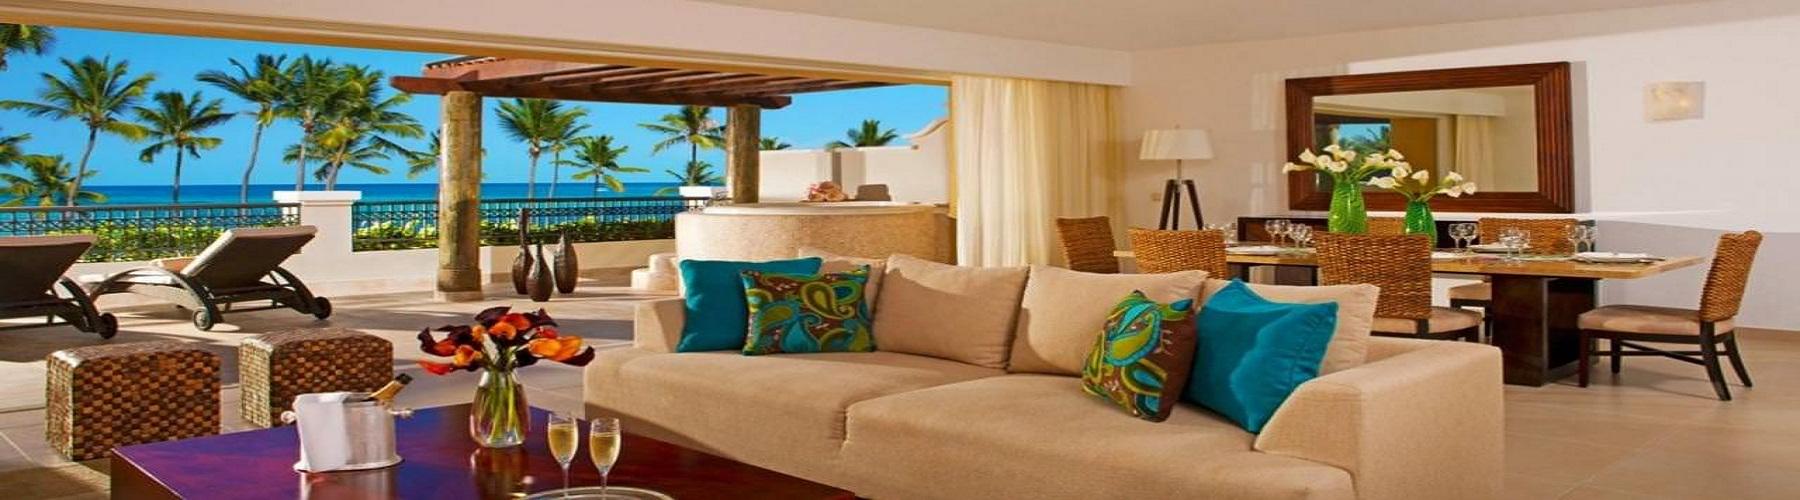 Забронировать отель Now Larimar Punta Cana 5*